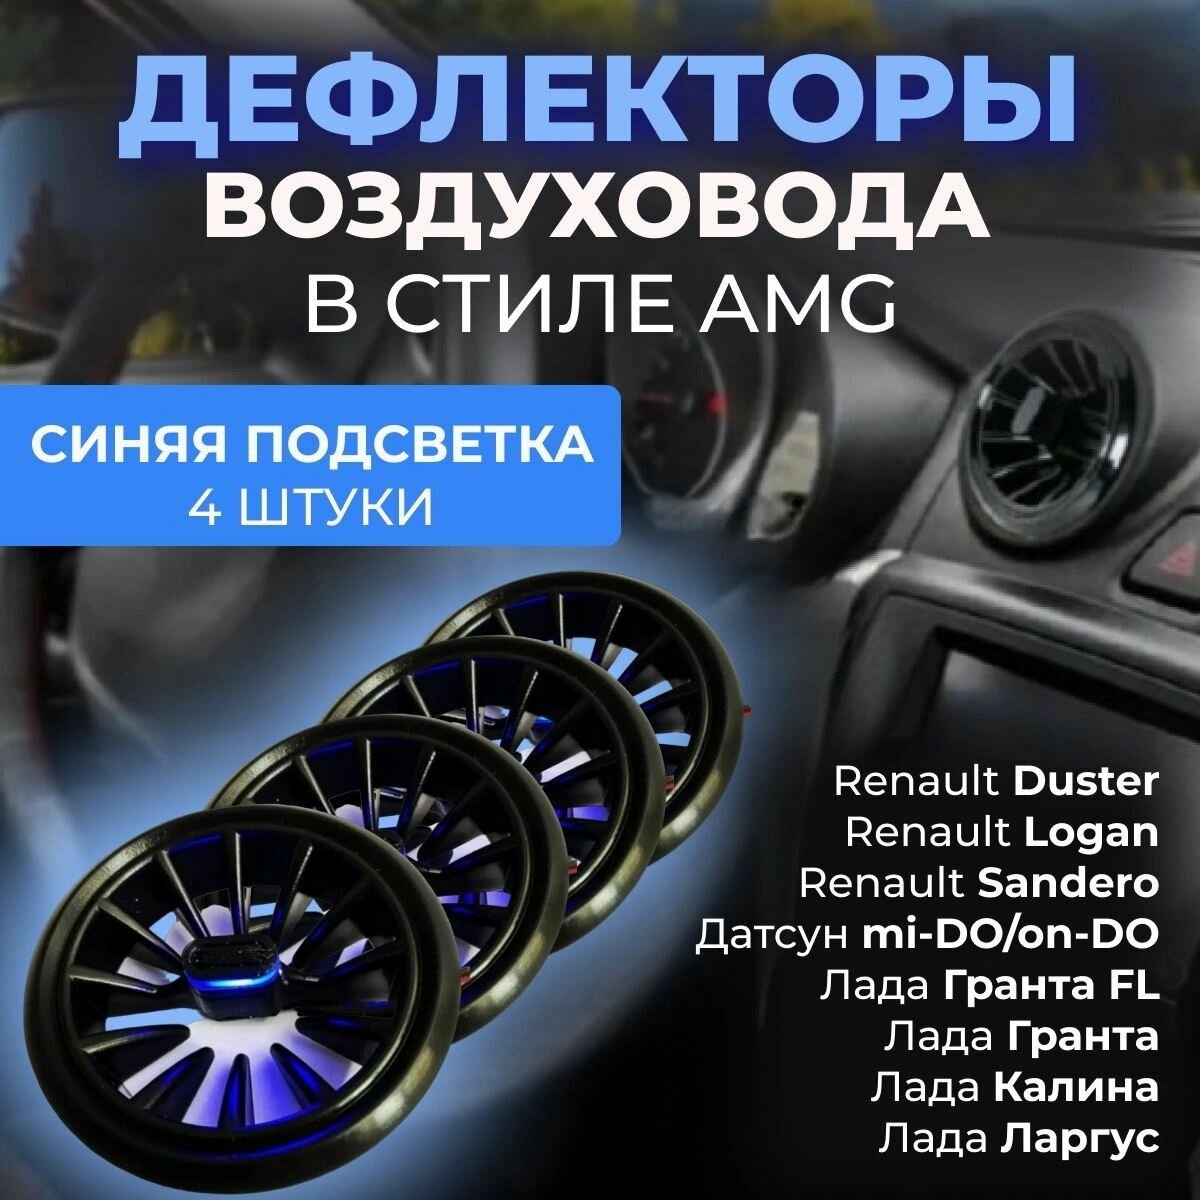 Автомобильный Дефлектор (сопла) воздуховода в стиле AMG (4 шт.) Синий цвет для для Гранта Калина 2 Датсун Дастер Ларгус Газель Бизнес Газель Некст